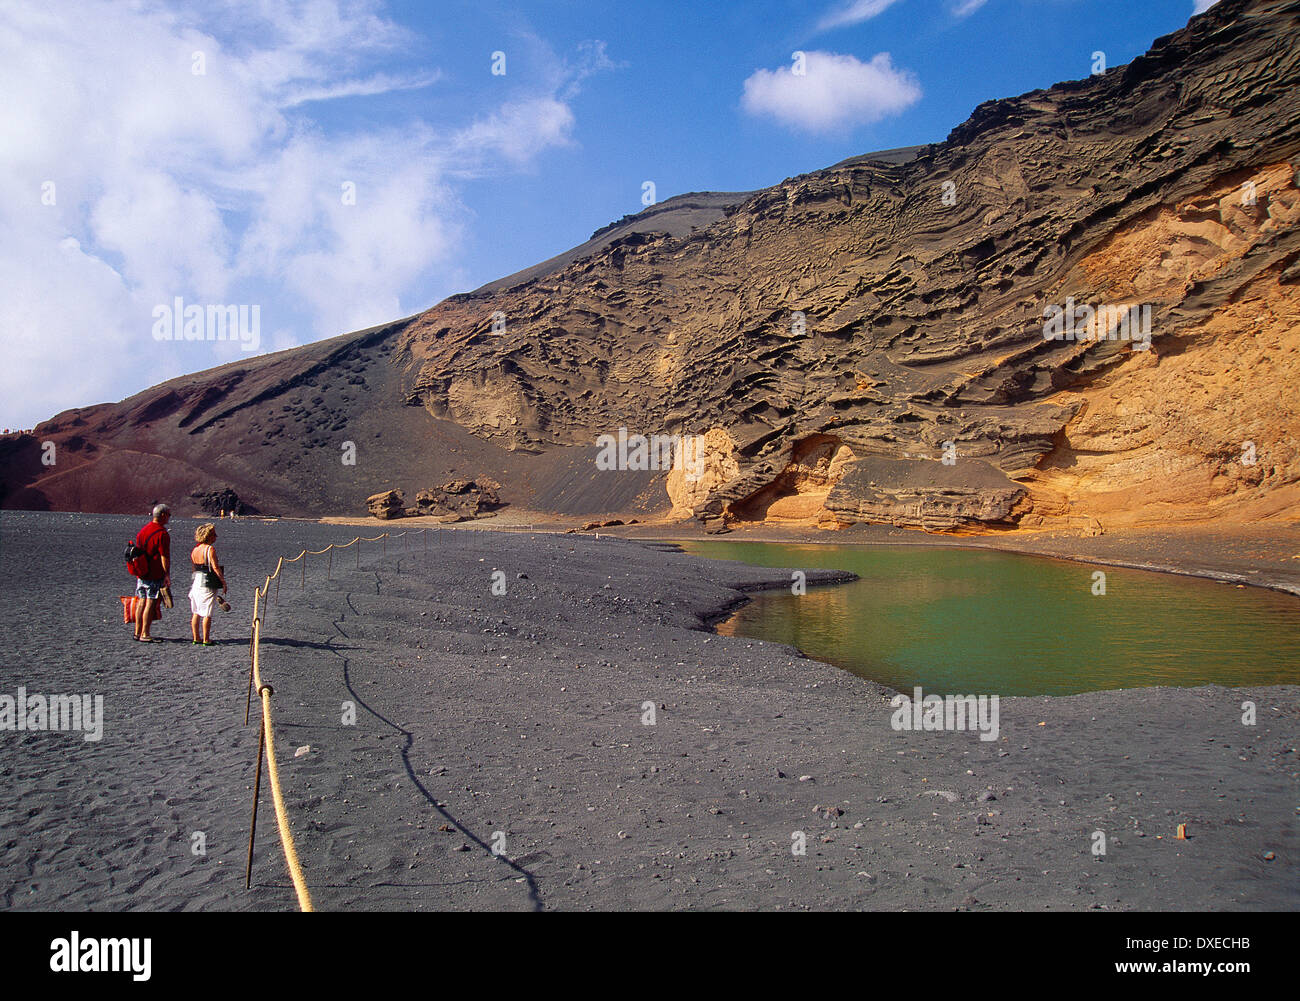 Los Clicos lagoon. El Golfo, Lanzarote island, Canary Islands, Spain. Stock Photo